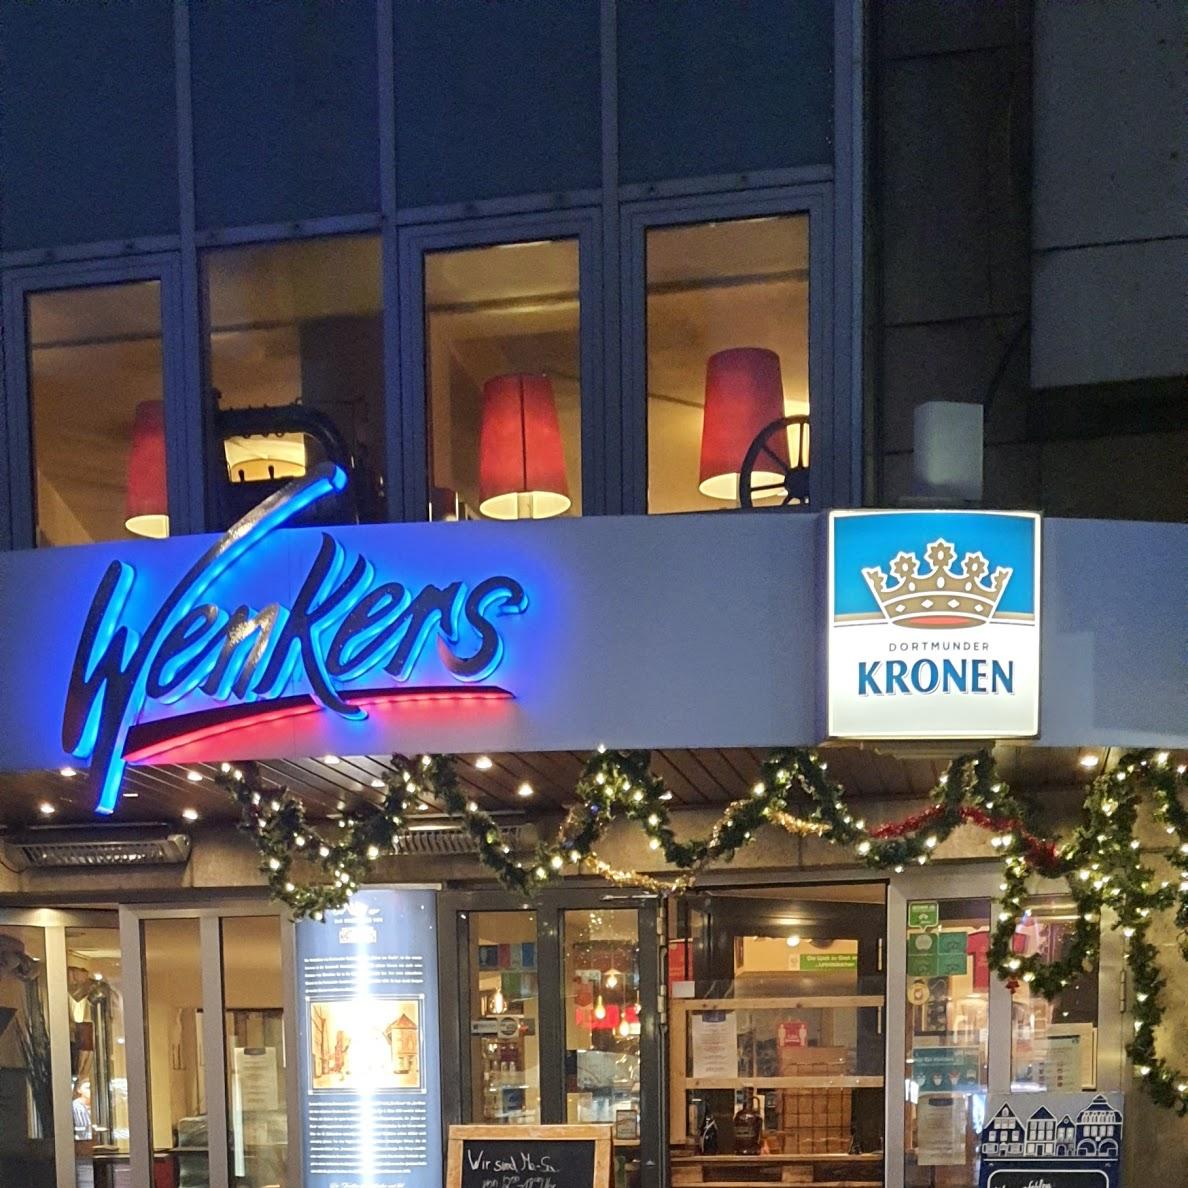 Restaurant "Wenkers am Markt" in  Dortmund